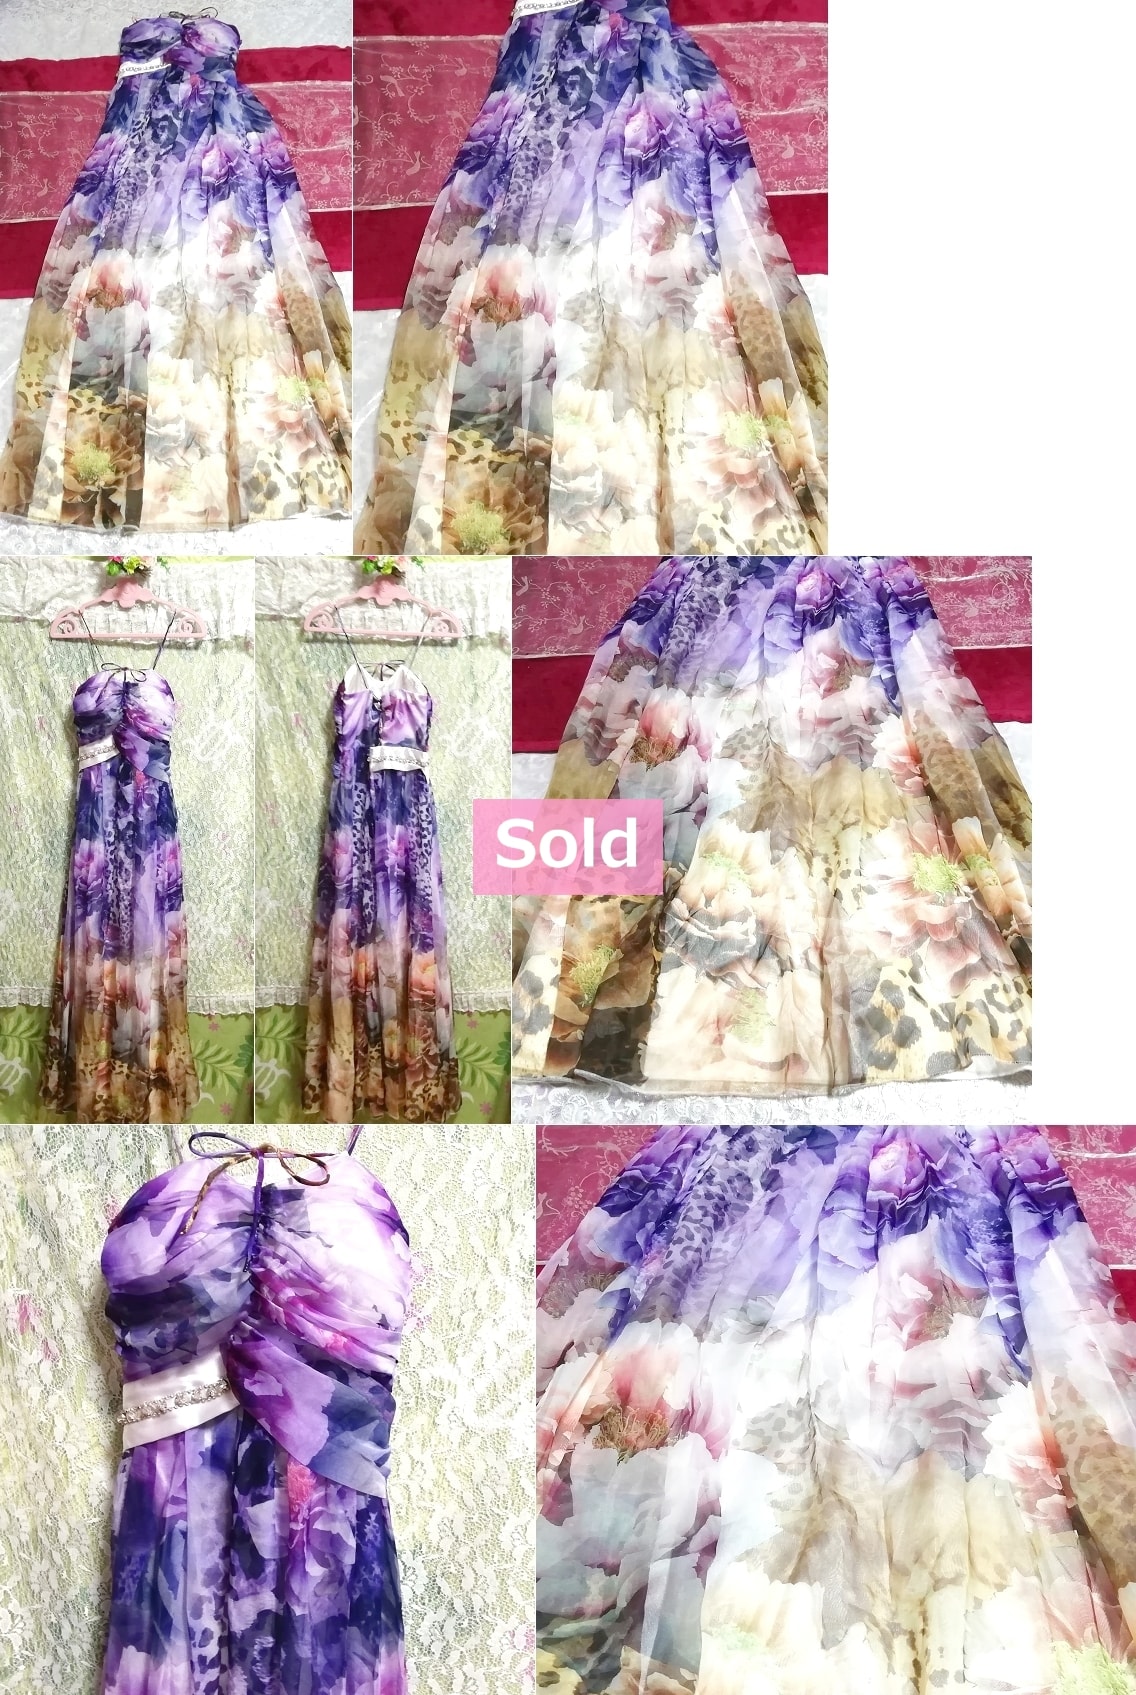 豪華紫パープル花柄シフォンキャミソールマキシロングドレスワンピース Purple flower pattern chiffon camisole maxi long dress/onepiece